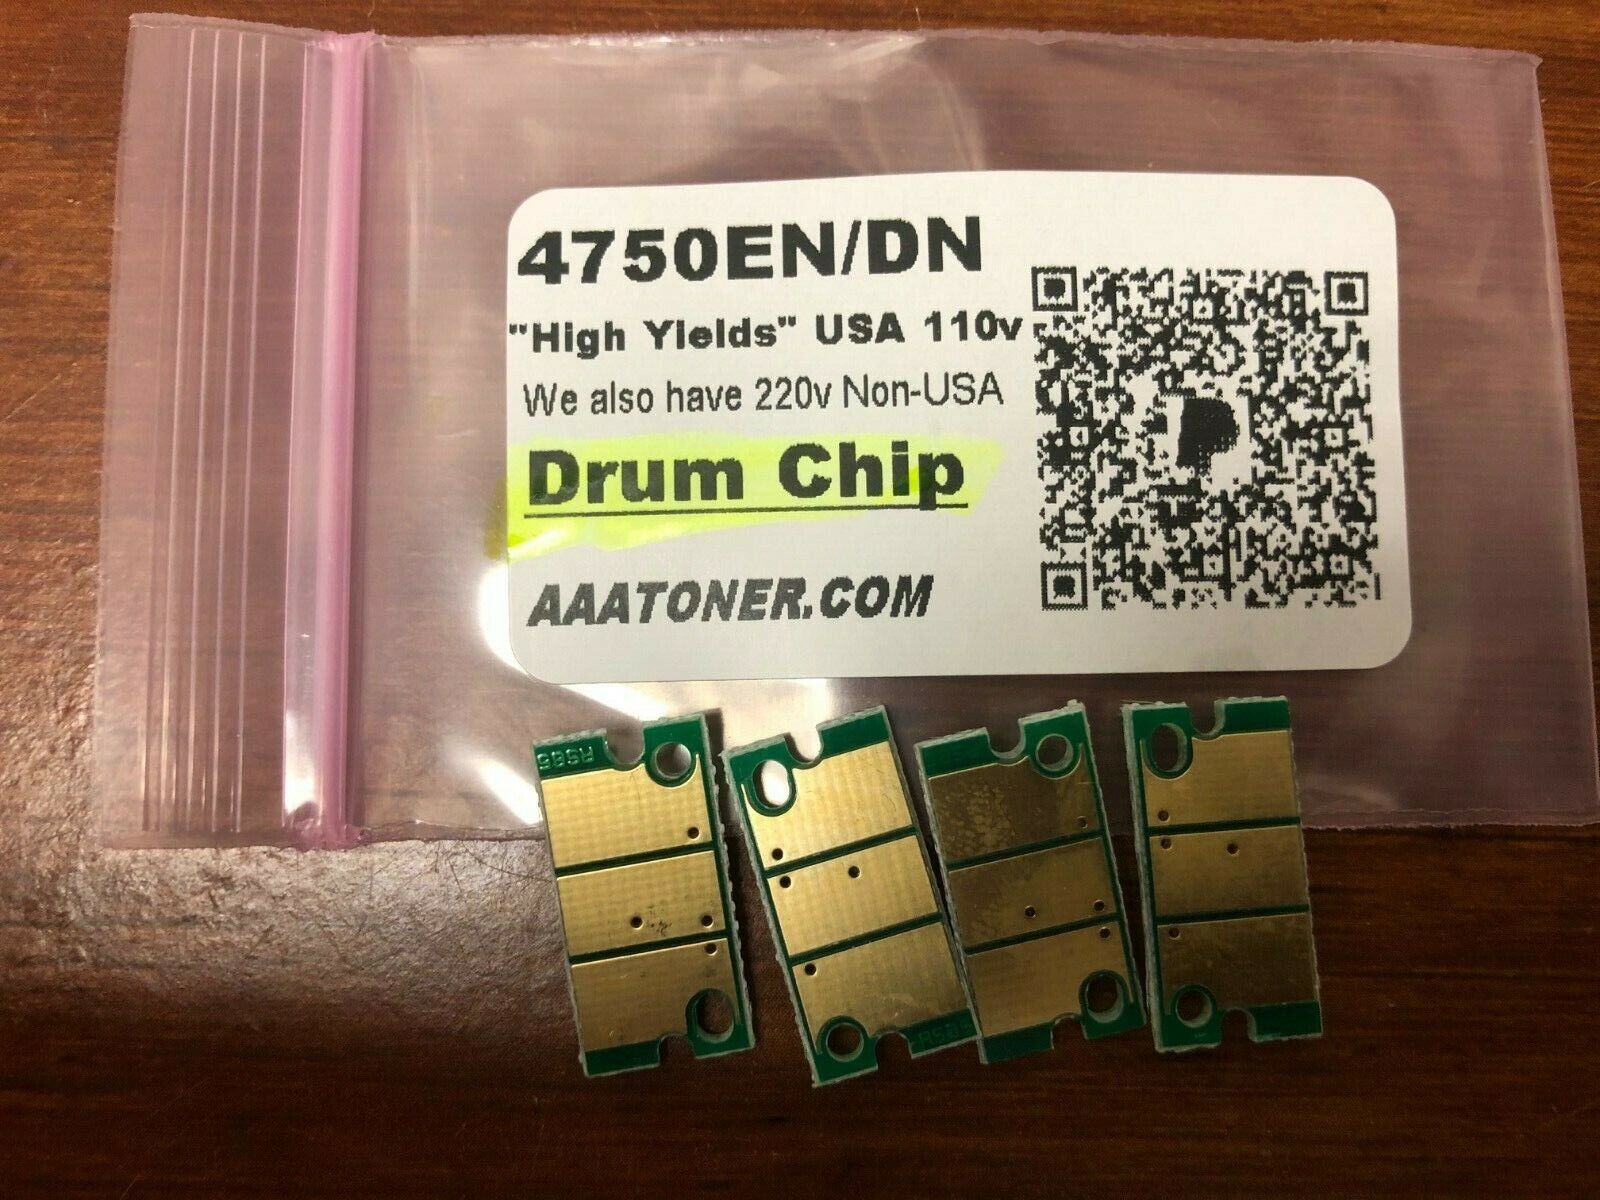 4 x Drum I-Unit Chip for Konica Minolta Magicolor 4750, 4750EN, 4750DN Refill